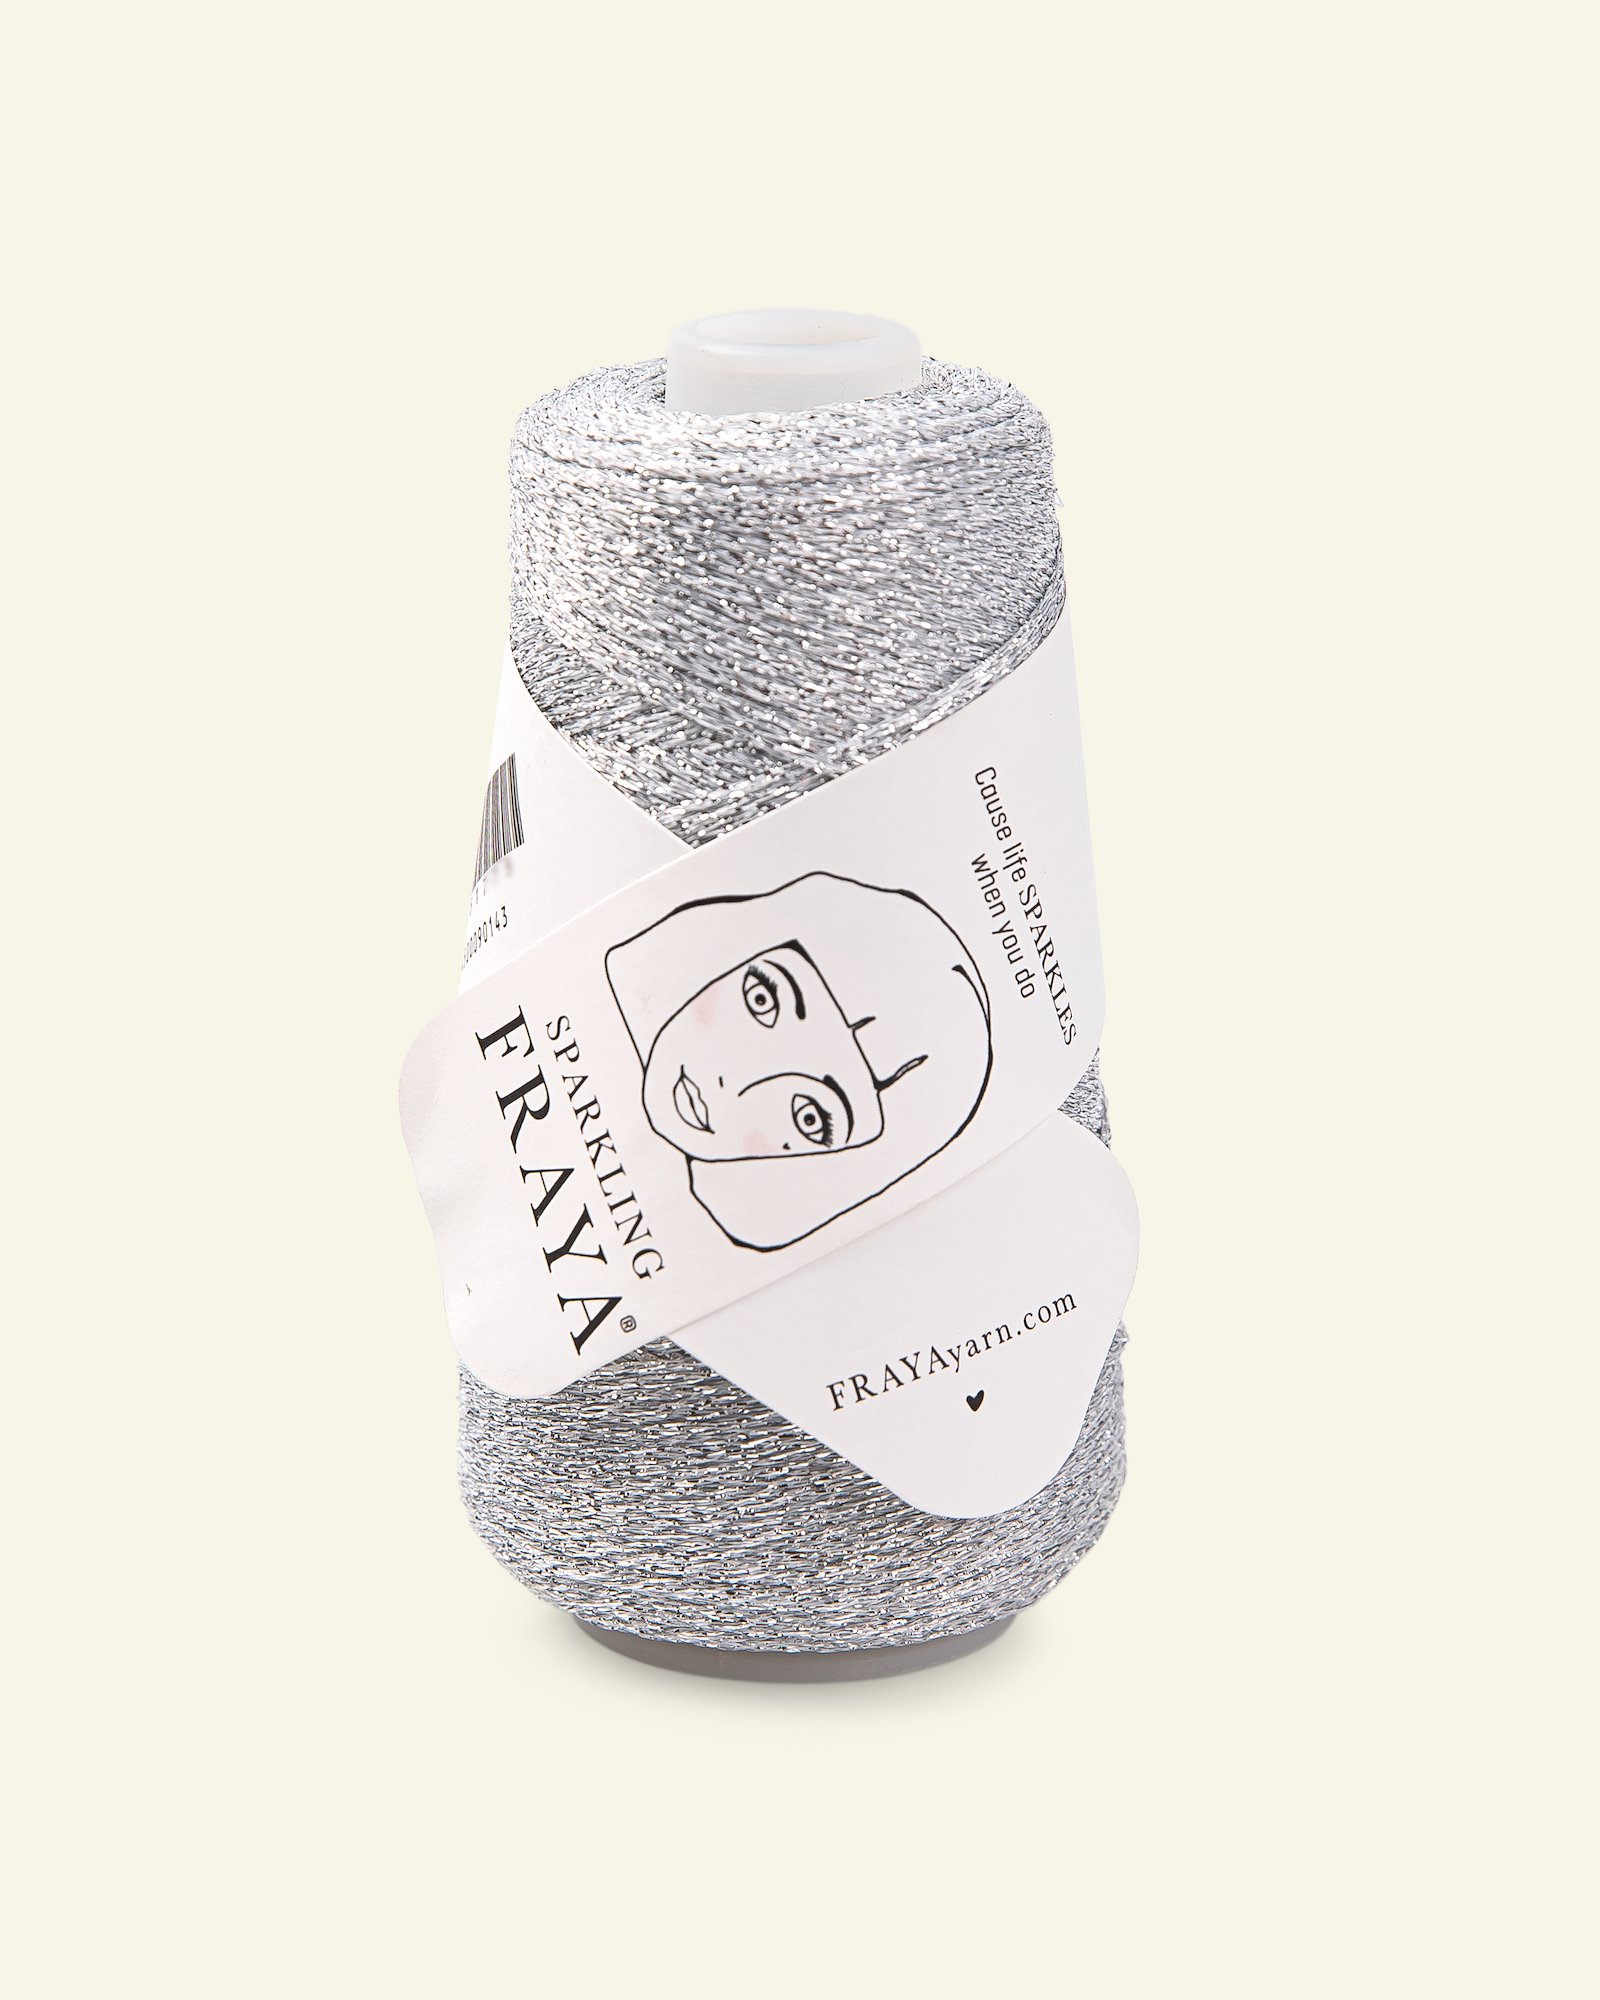 FRAYA, effect yarn "Sparkling", silver 90051780_pack